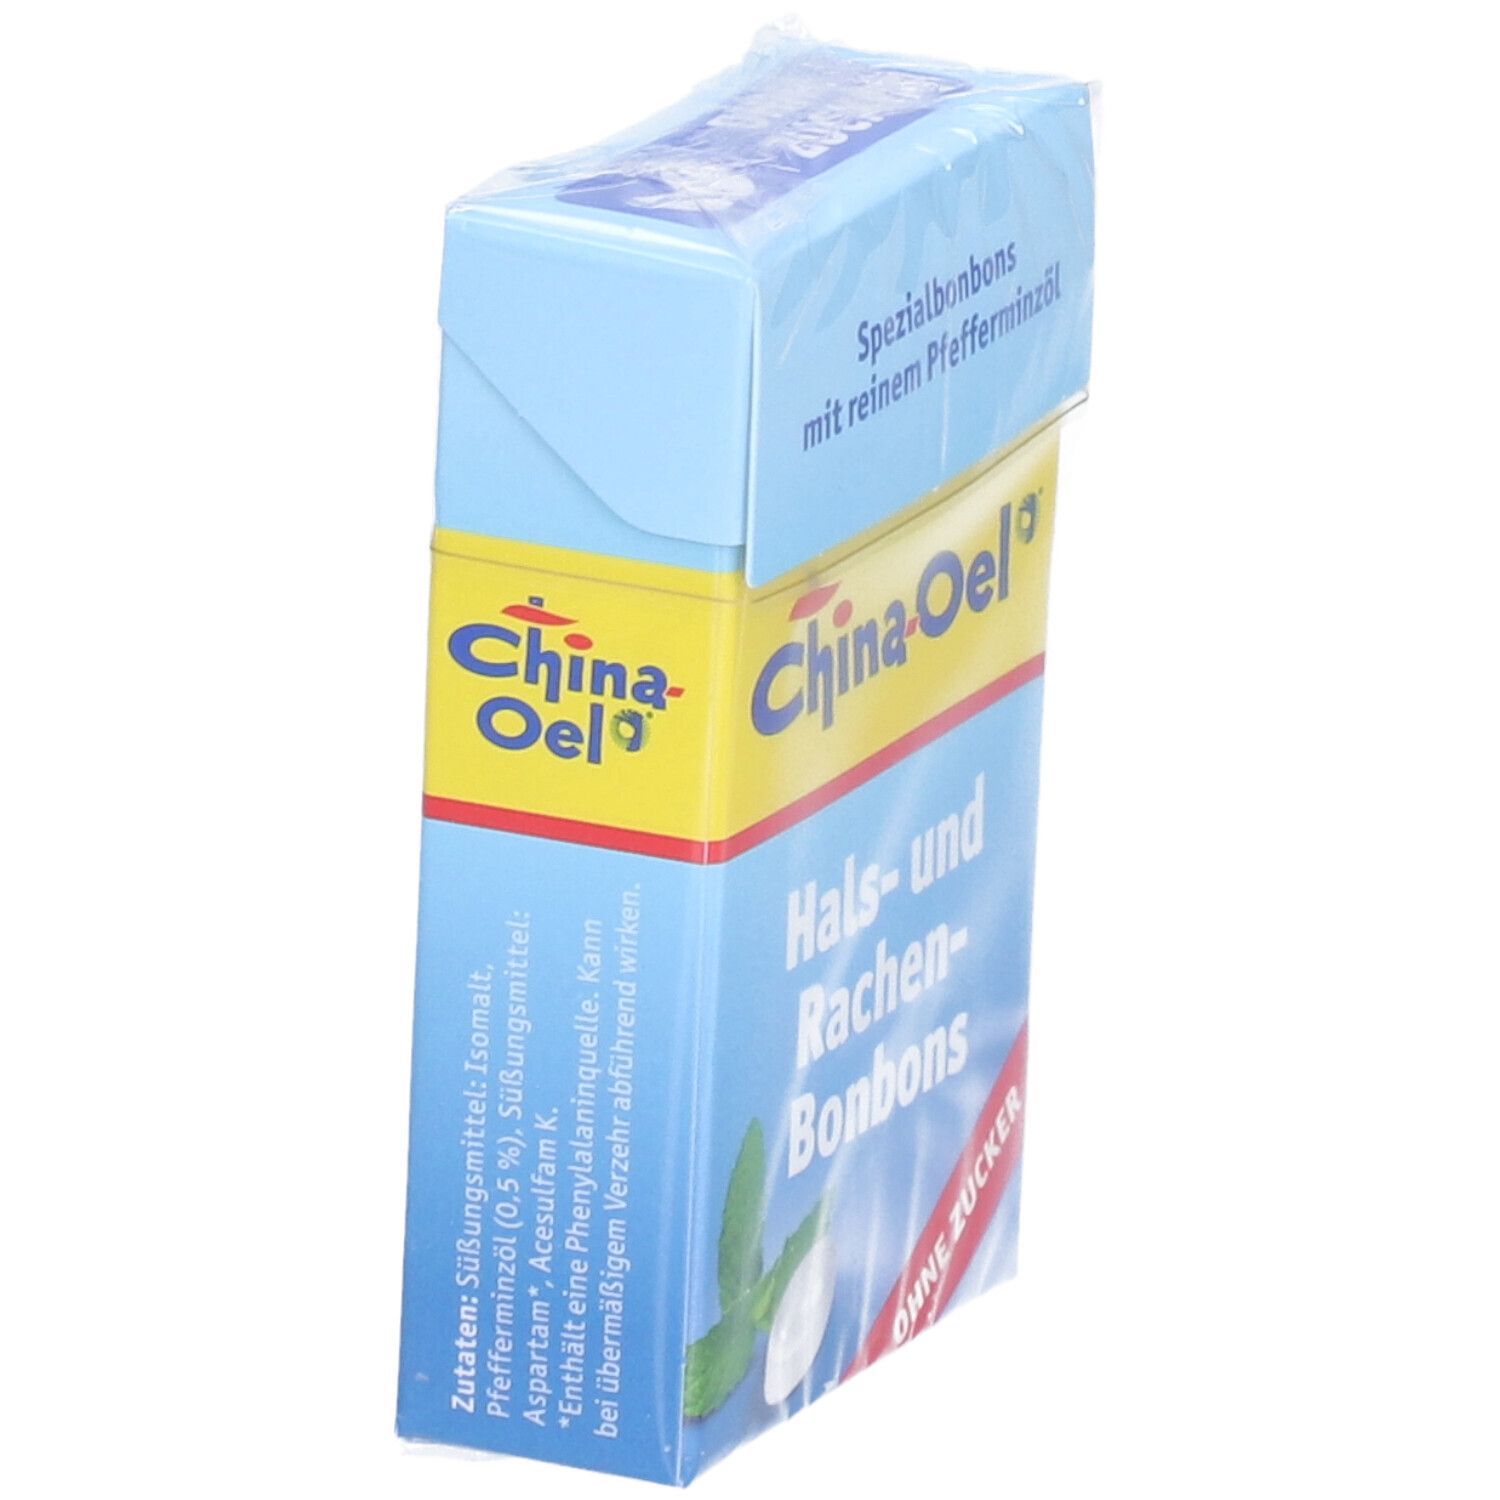 China-Oel® Hals- und Rachenbonbons - ohne Zucker 40 g - SHOP APOTHEKE